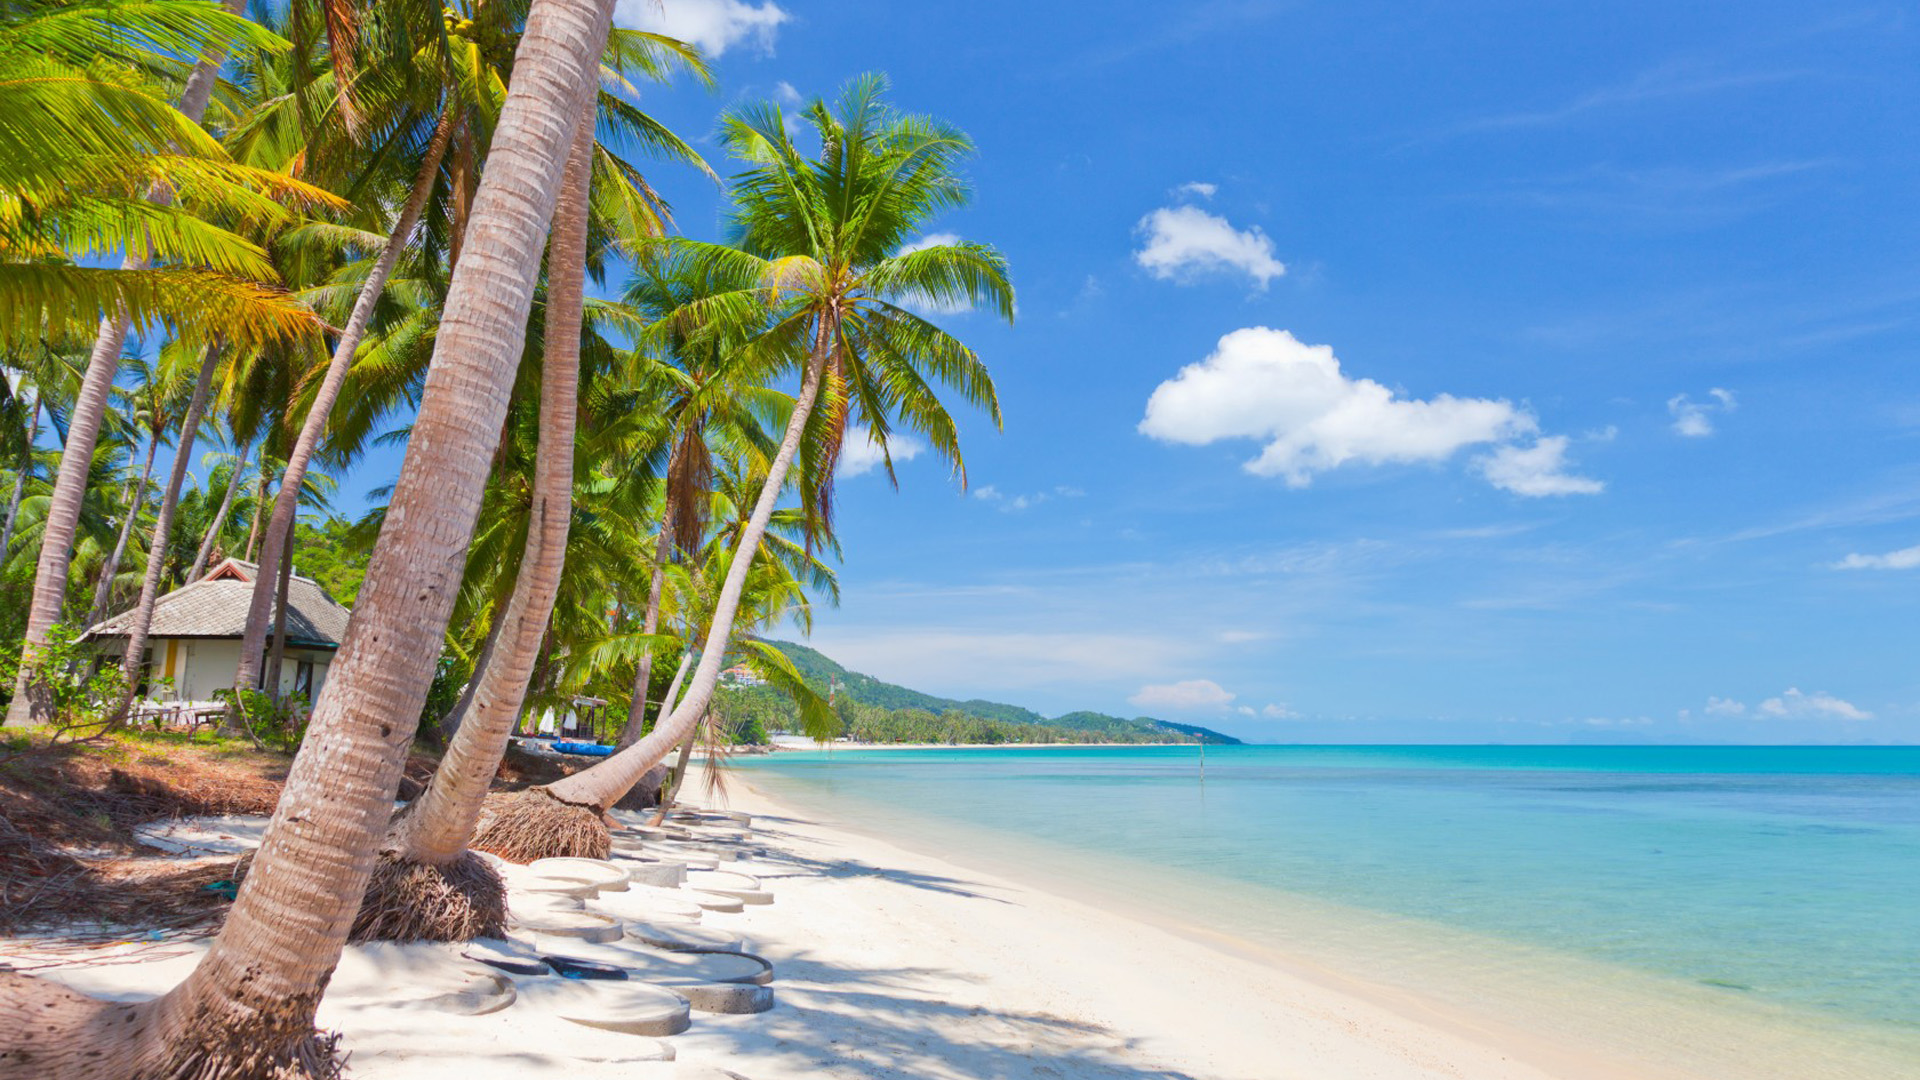 椰子树,大海,热带沙滩,自然风景壁纸